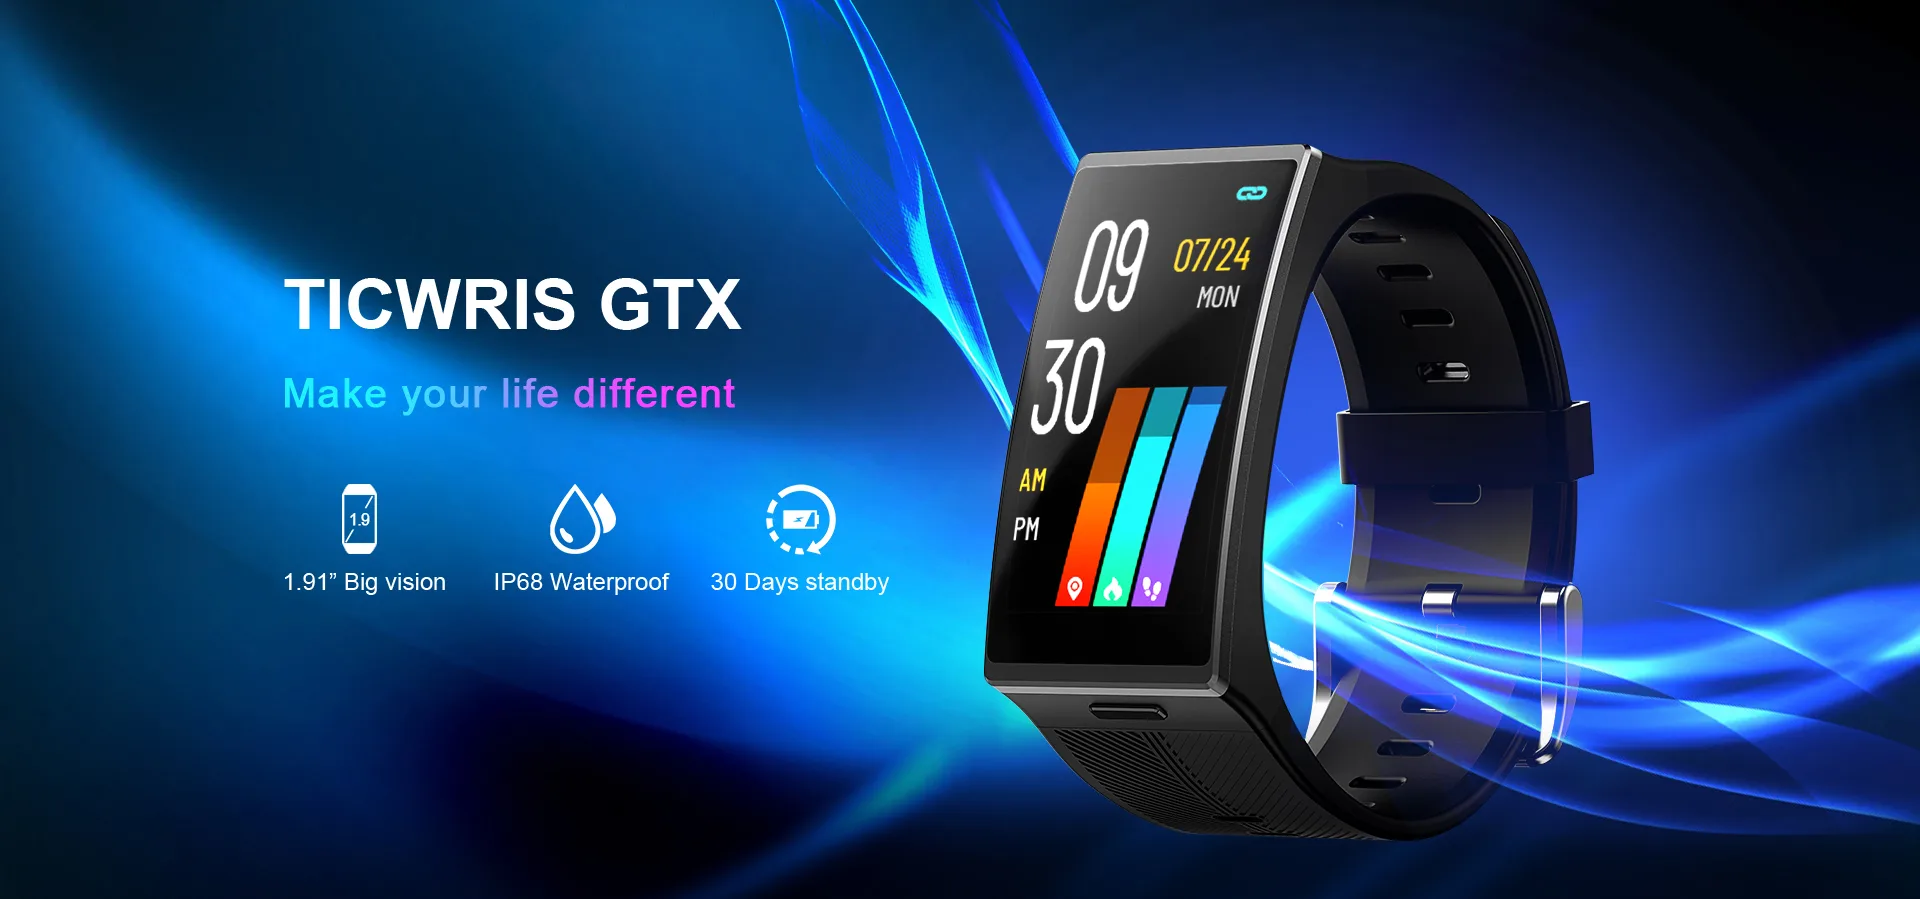 Ticwris GTX smartwatch